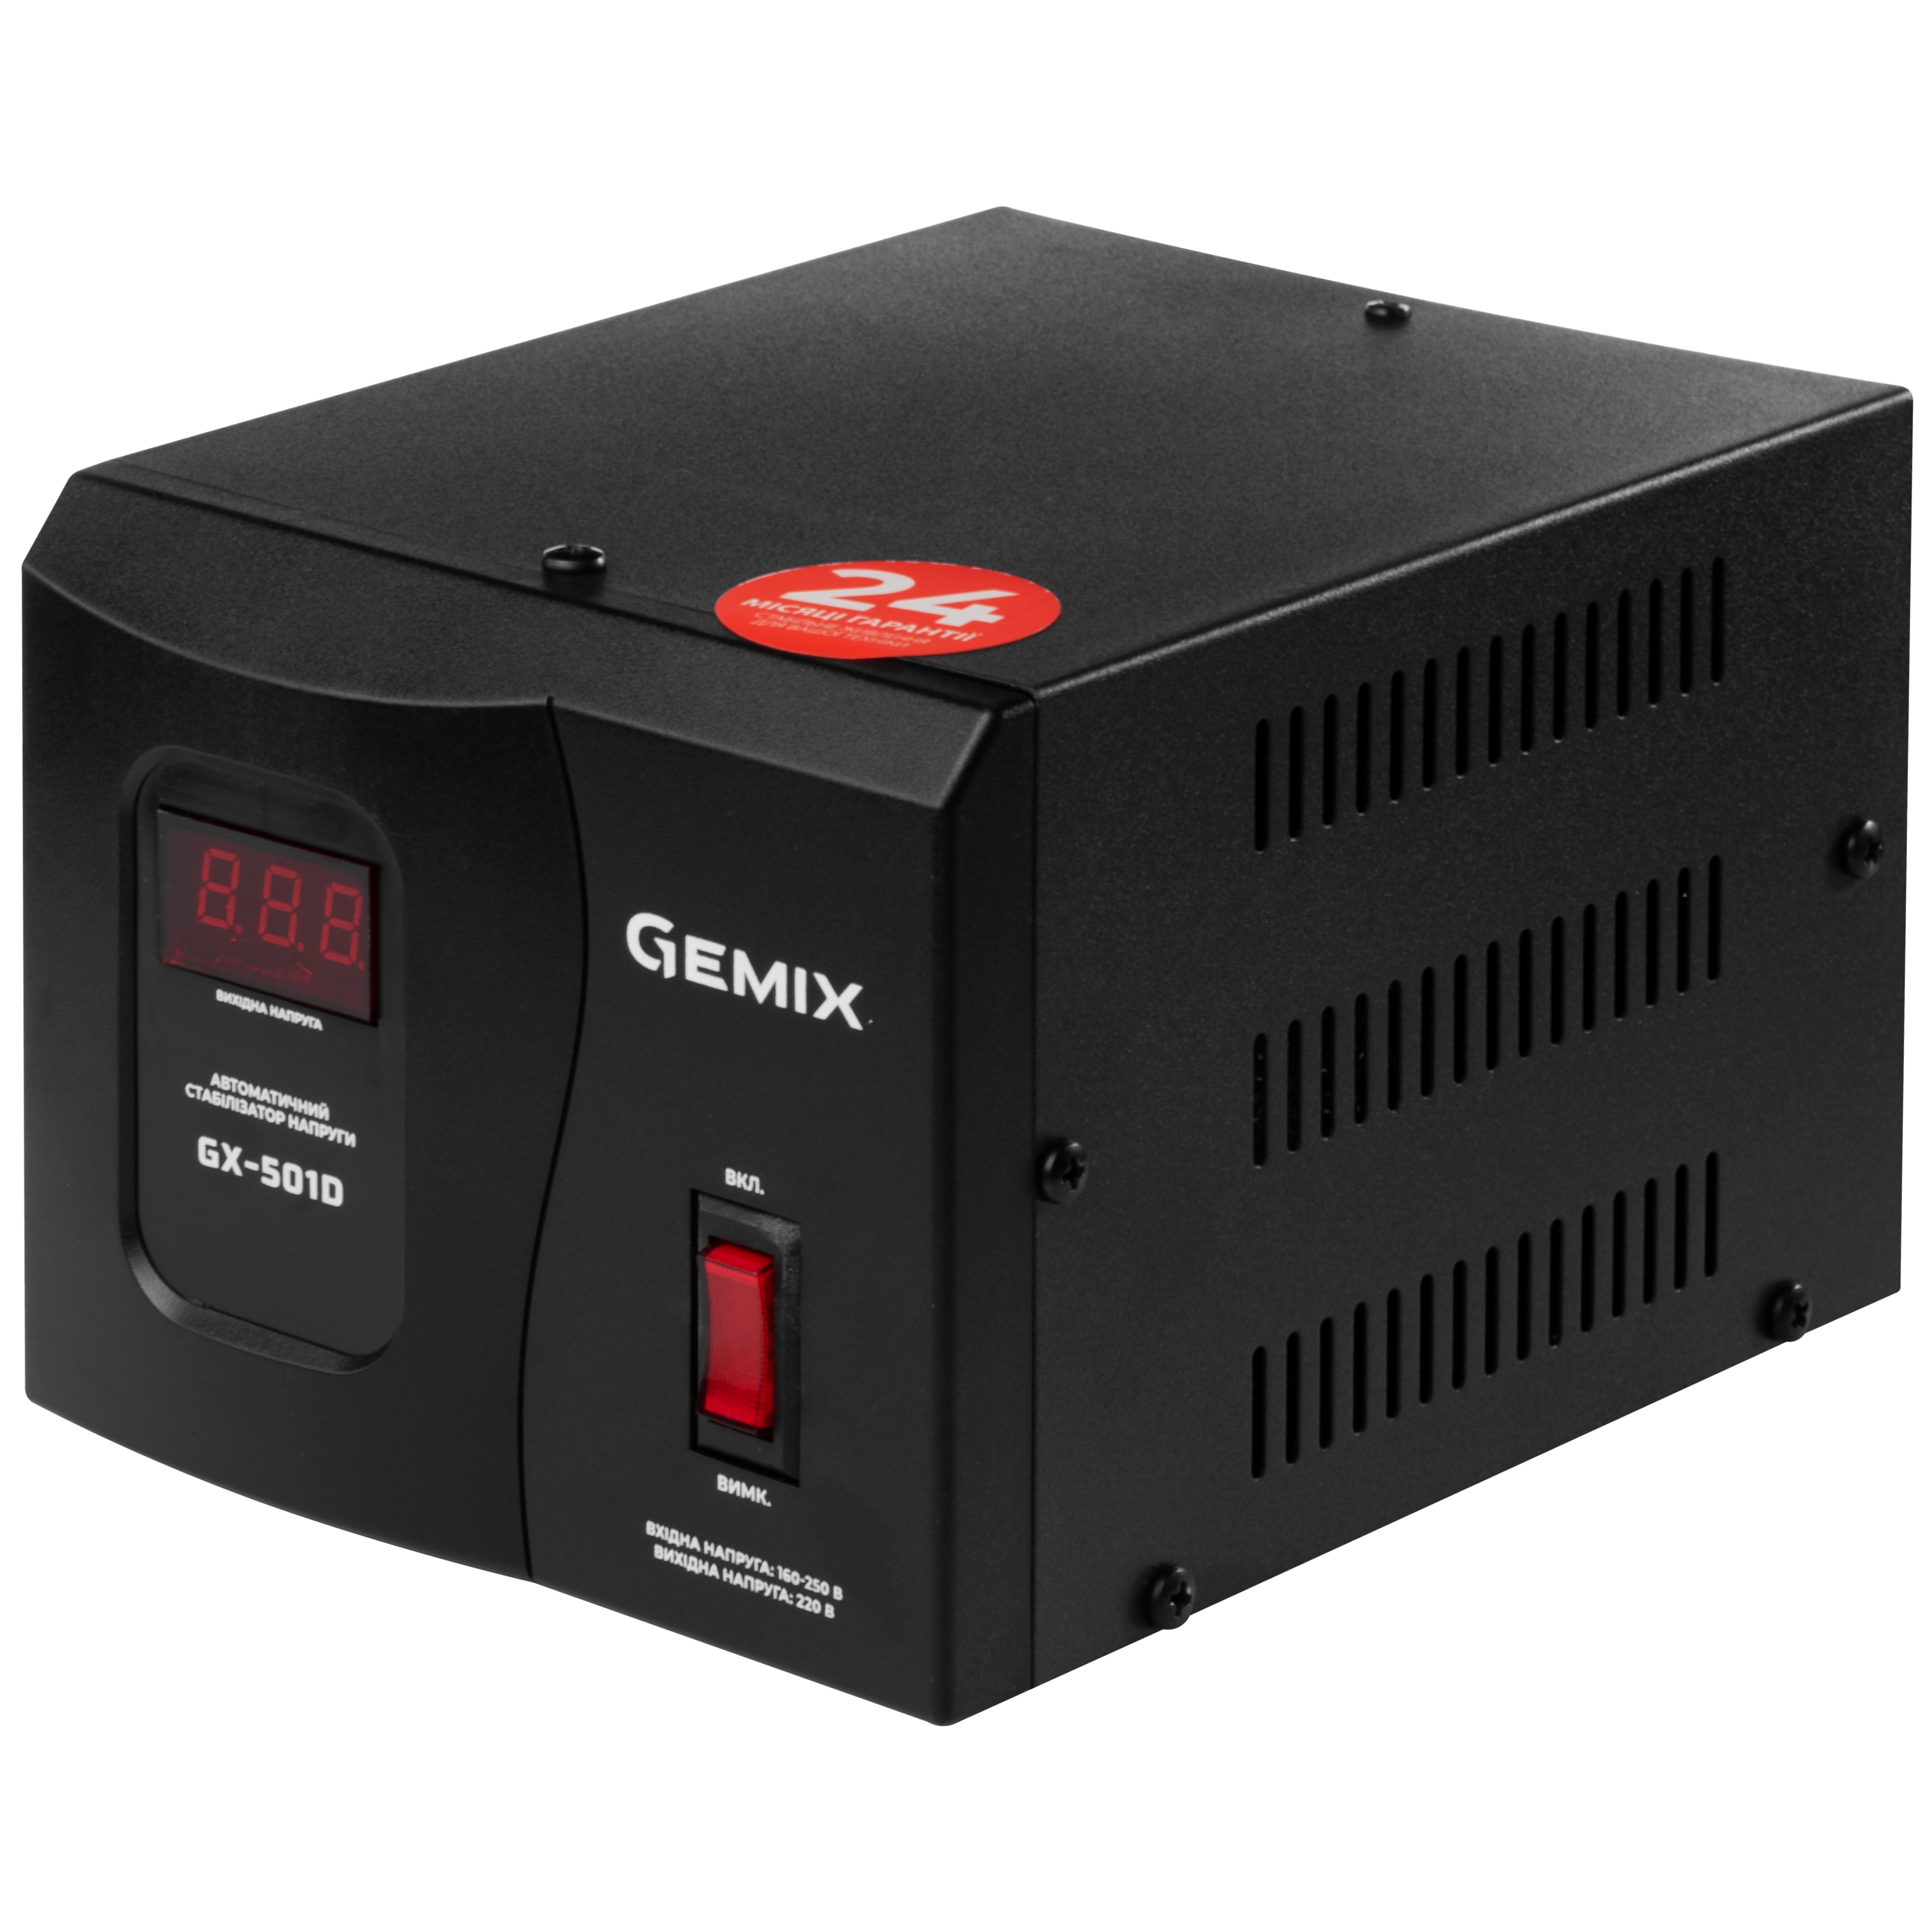 Купить стабилизатор напряжения Gemix GX-501D в Херсоне